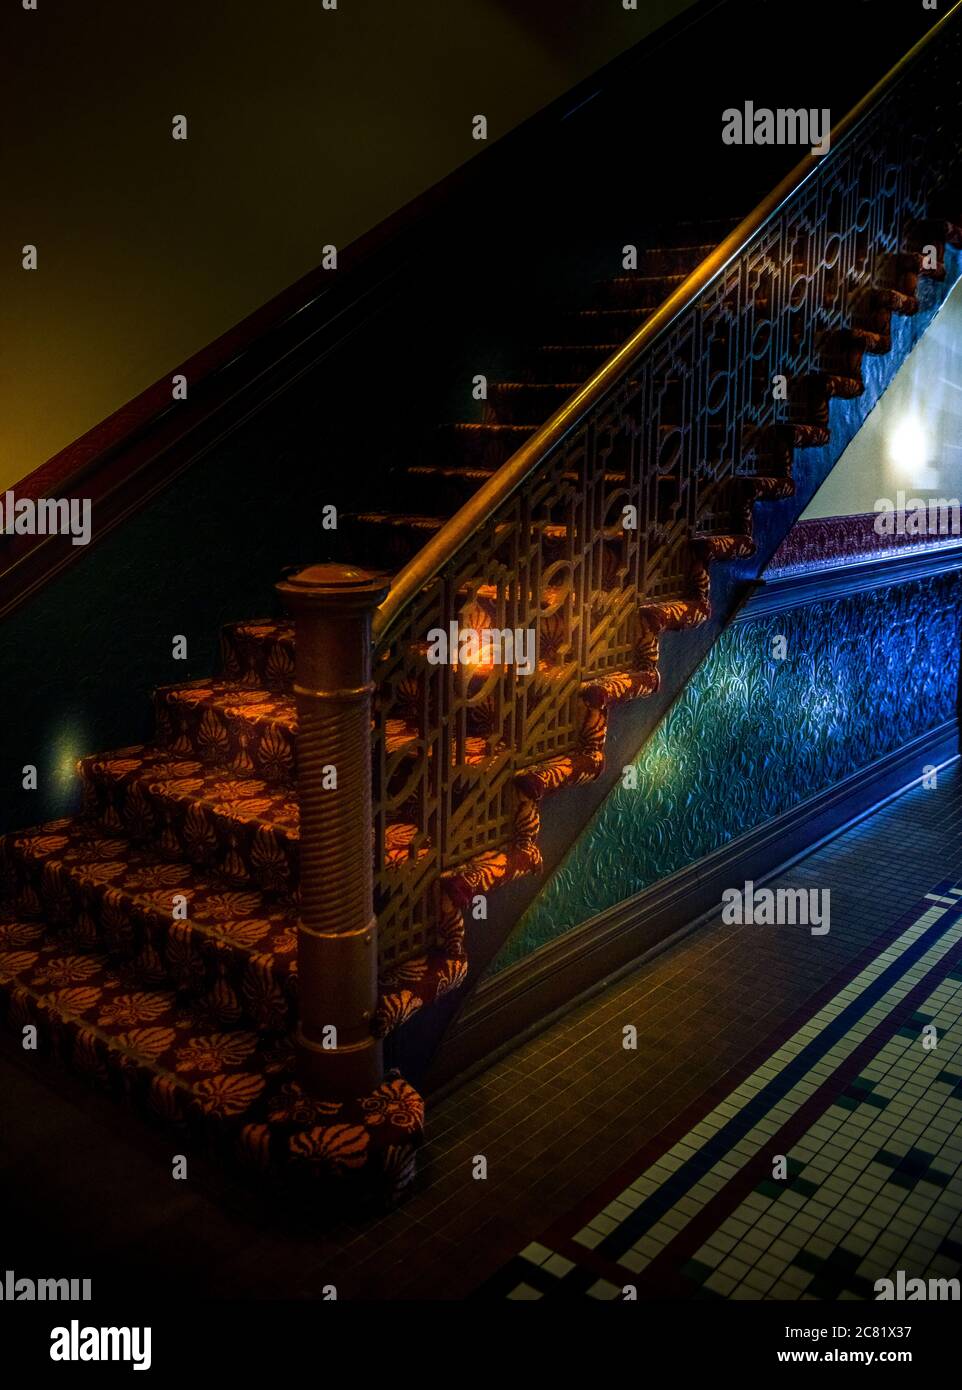 Bunte Flare Beleuchtung im alten Gebäude mit Treppe und Zinn geprägte Vertäfelung mit Mosaikfliesen Boden in geheimnisvoller Atmosphäre, USA Stockfoto